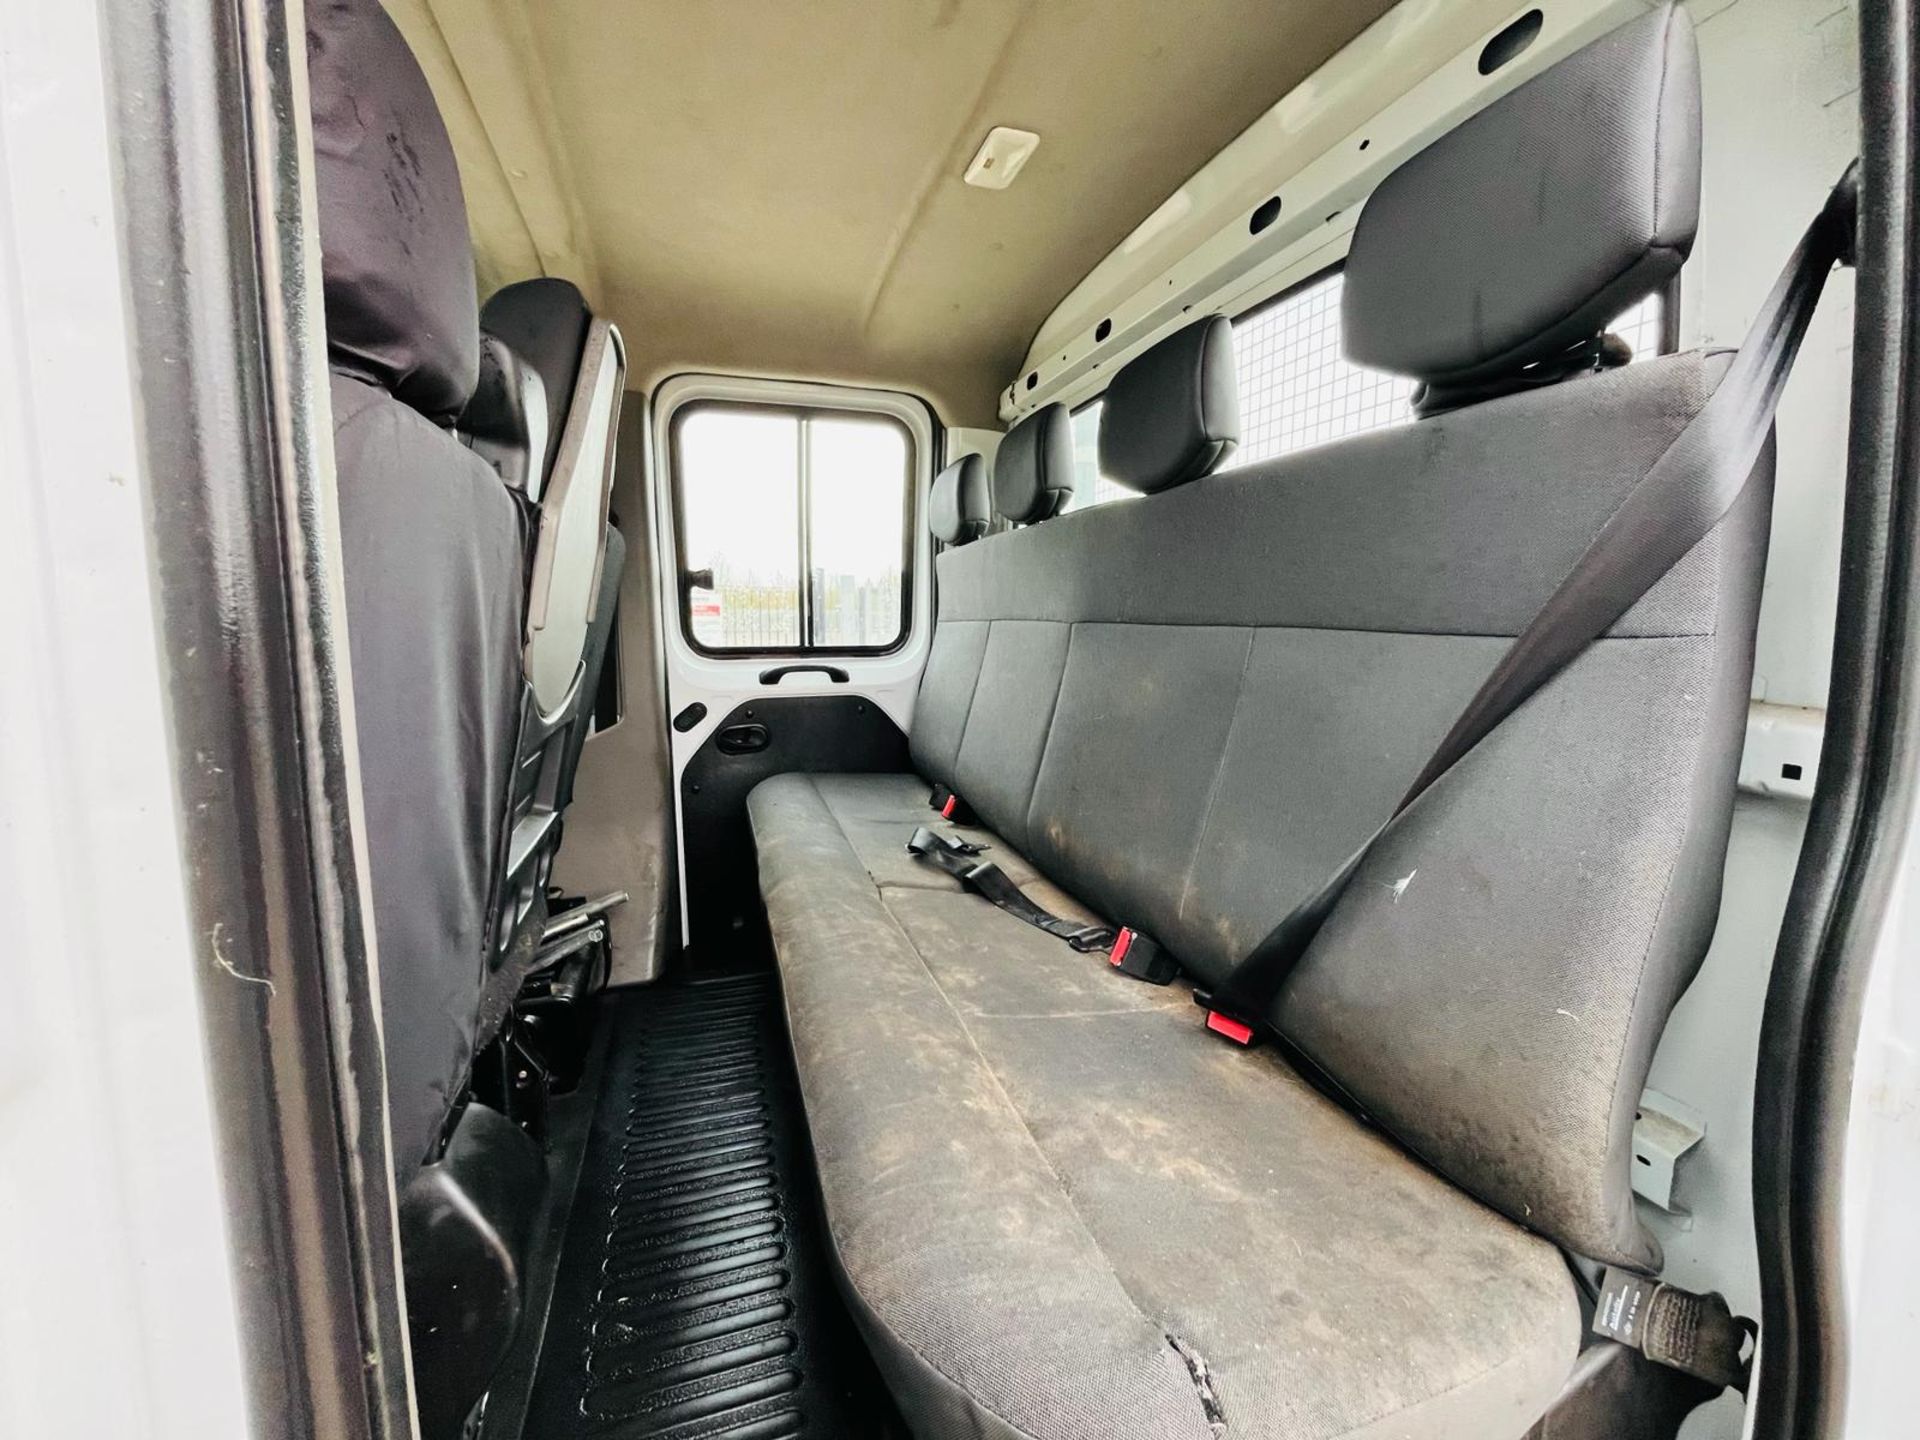 Nissan NV400 Dropside Crew Cab SE 2.2 DCI 130 L3 H1 2019 '68 Reg'-ULEZ Compliant - Dropside Body - Image 25 of 30